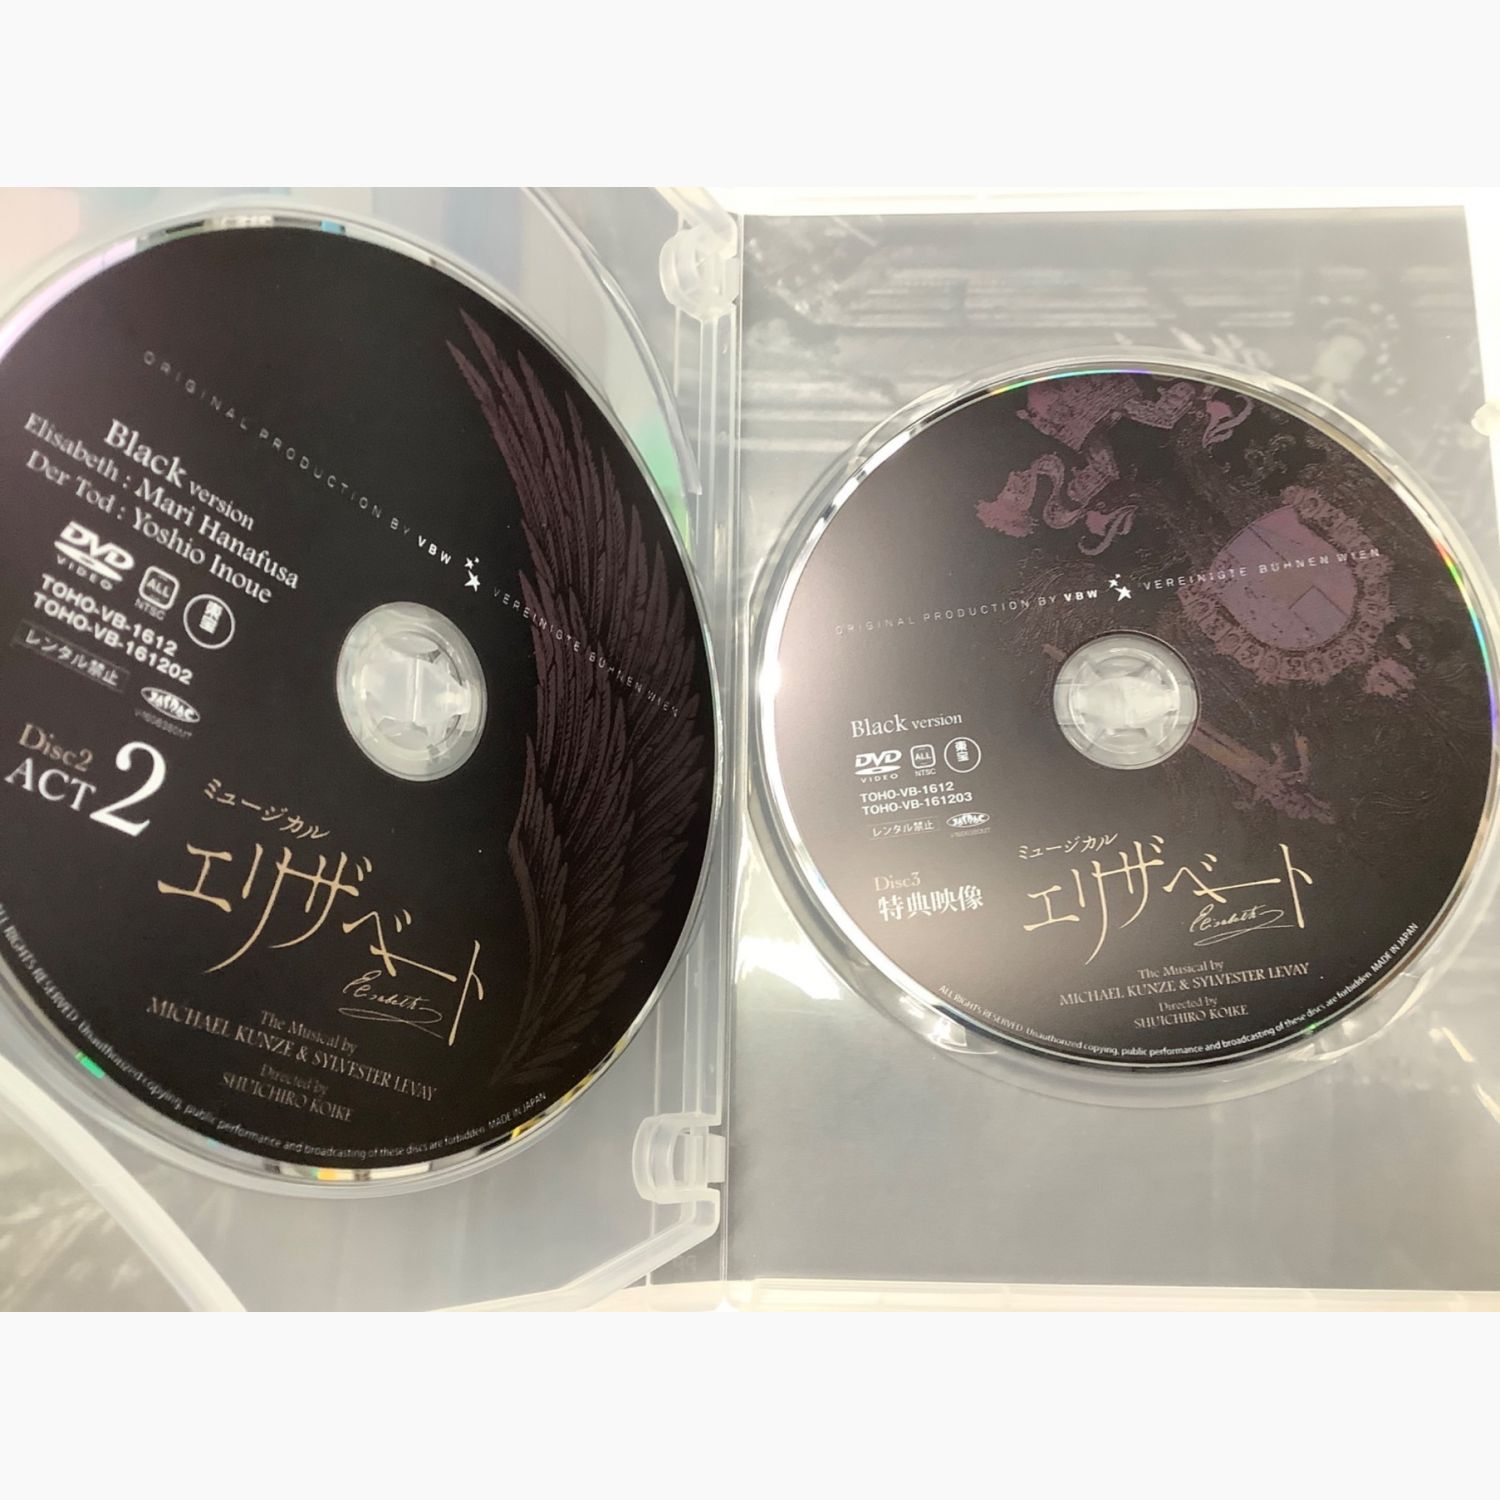 東宝 DVD ミュージカル エリザベート Black version TOHO-VB-1612 